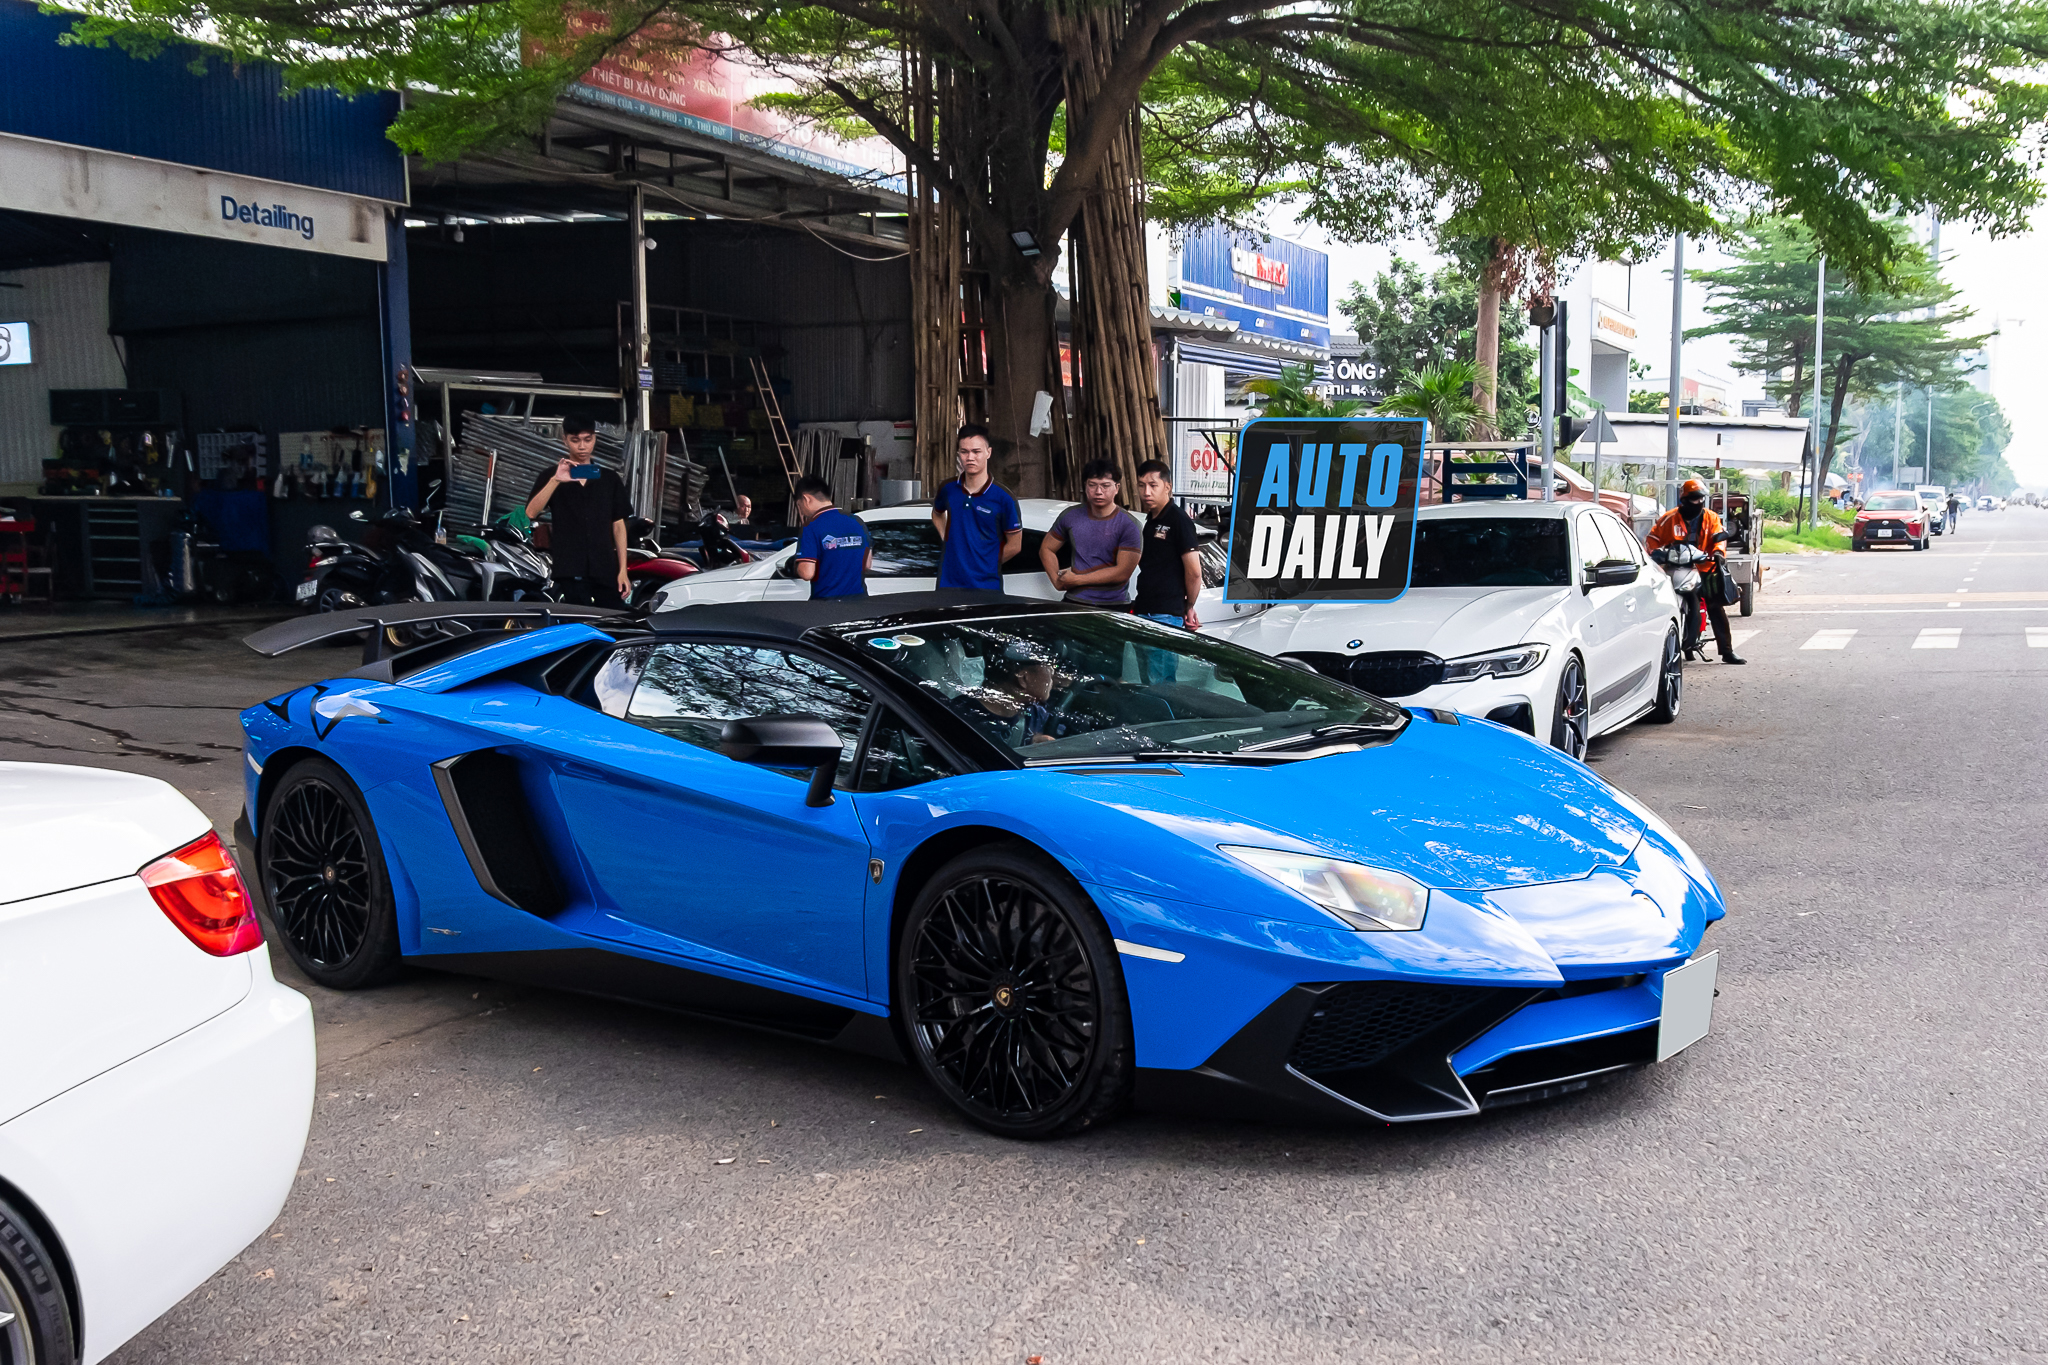 Bắt gặp Lamborghini Aventador SV Roadster màu xanh độc nhất Việt Nam aventador-sv-roadster-xanh-autodaily-3.JPG